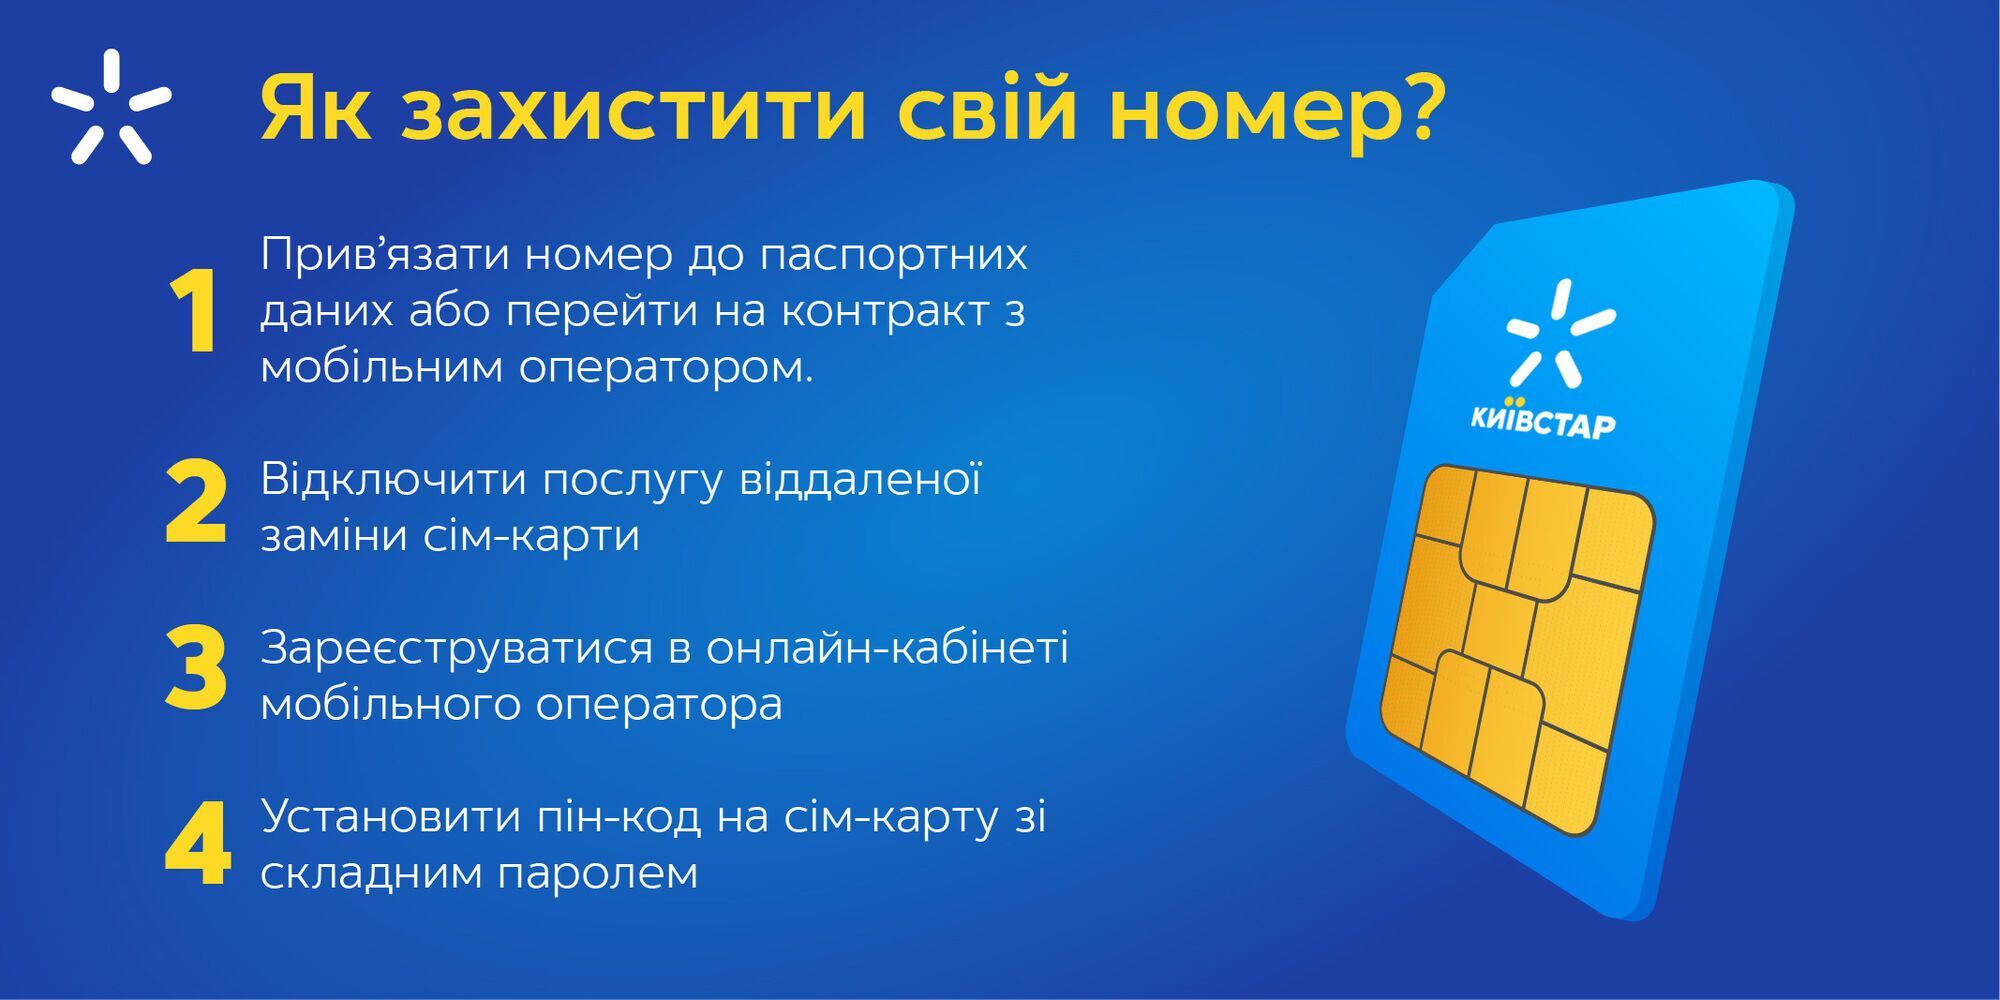 Кибербезопасность и противодействие мошенникам: что важно знать всем украинцам и как защититься бизнесу